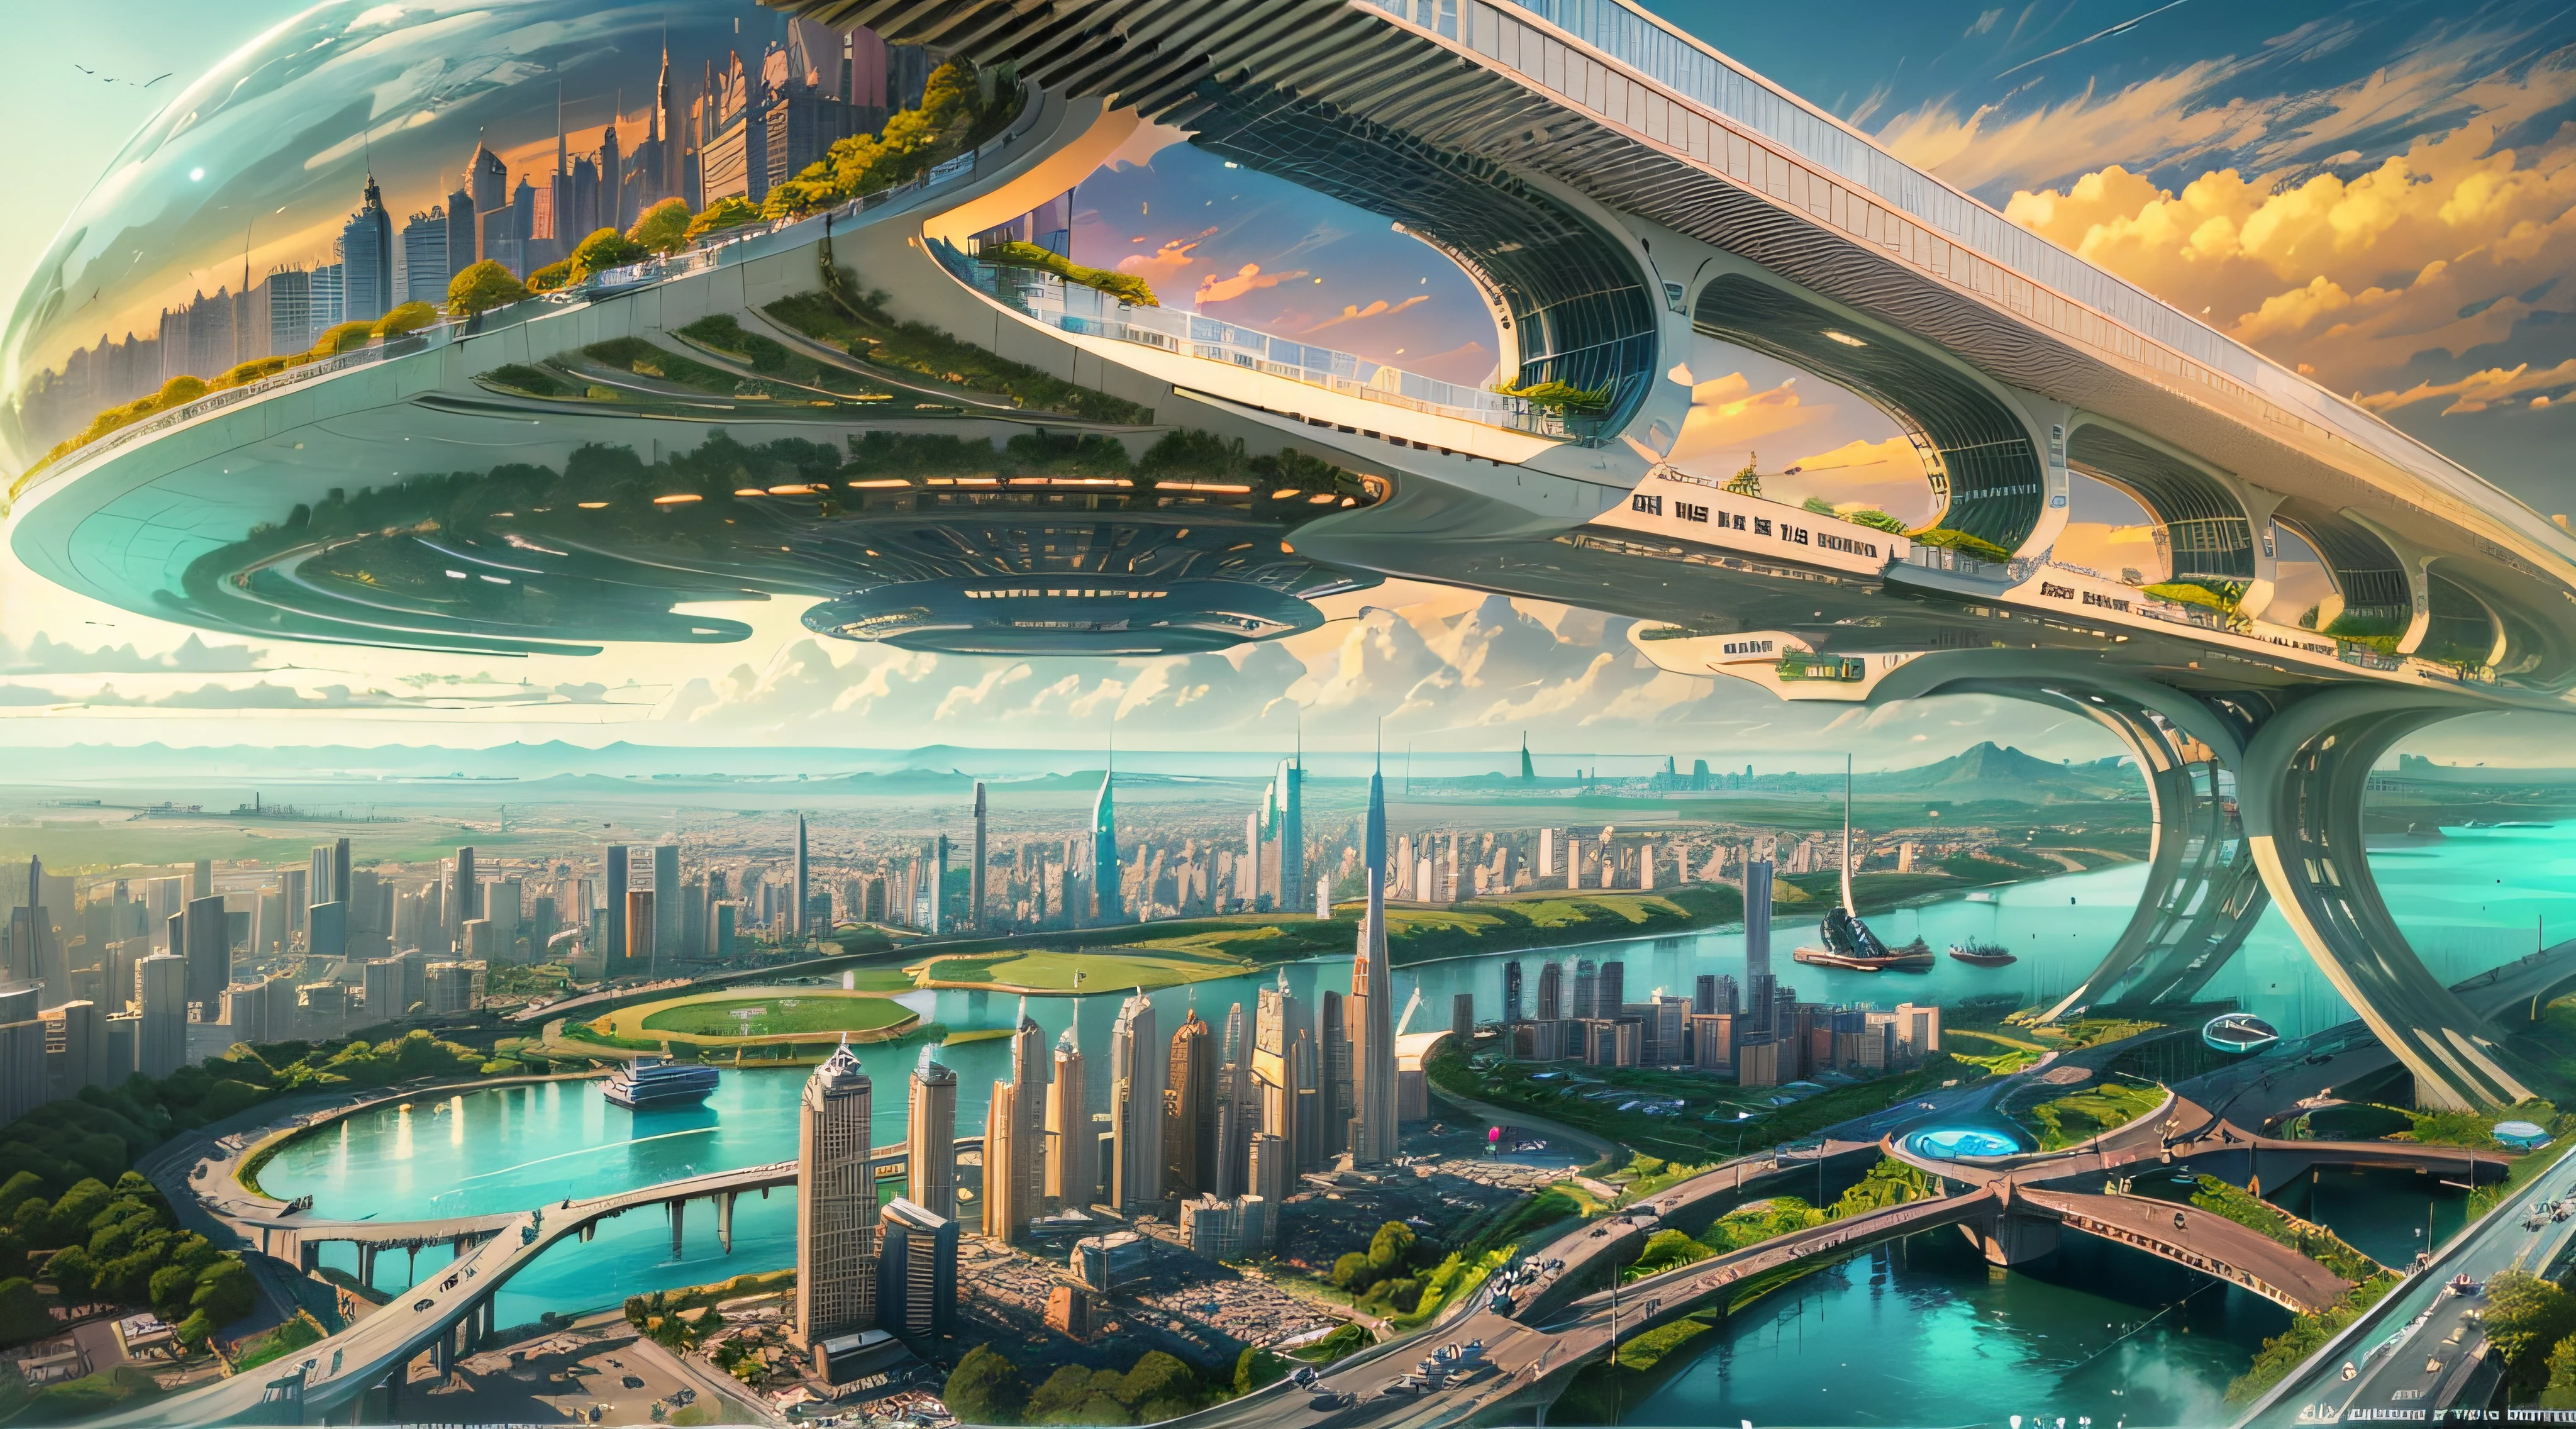 (최고의 품질,4K,8K,고해상도,걸작:1.2),매우 상세한,(현실적인,사실적인,사실적인:1.37),미래의 떠다니는 도시,미래 기술,거대한 도시형 하이테크 태블릿 플랫폼,비행선,하늘에 떠있는,미래 도시,주변의 작은 비행선,하이테크 반구형 플랫폼,화려한 조명,고급 아키텍처,현대 건축,초고층 건물,클라우드에 액세스,경치 좋은 아름다움,도시 전망,인상적인 디자인,자연과 자연스럽게 조화를 이루다,활기차고 활기찬 분위기,미래형 교통 시스템,주차가 중단되었습니다,투명한 경로,무성한 녹지,하늘정원,계단식 폭포,웅장한 스카이라인,물에 반사,반짝이는 강,건축 혁신,미래 지향적인 고층 빌딩,투명한 돔,건물 모양이 특이하네요,고가 산책로,인상적인 스카이라인,빛나는 불빛,미래 기술,미니멀리스트 디자인,명승지,전경,클라우드 피어싱 타워,생생한 색상,서사시적인 일출,서사시적인 일몰,눈부신 조명 디스플레이,마법 같은 분위기,미래 도시,도시 유토피아,럭셔리라이프스타일,혁신적인 에너지,지속 가능한 개발,스마트시티 기술,고급 인프라,고요한 분위기,자연과 기술이 조화롭게 살아요,멋진 도시 풍경,전례 없는 도시계획,건축은 자연과 자연스럽게 연결됩니다.,첨단 대도시,최첨단 엔지니어링의 경이로움,도시 생활의 미래,비전 있는 건축 컨셉,에너지 효율적인 건물,환경과의 조화,구름 위에 떠 있는 도시,유토피아적 꿈이 현실이 되다,가능성은 끝이 없습니다,최첨단 교통망,그린에너지 통합,혁신적인 소재,인상적인 홀로그램 디스플레이,첨단 통신 시스템,숨막히는 공중 전망,조용하고 평화로운 환경,모더니스트 미학,천상의 아름다움